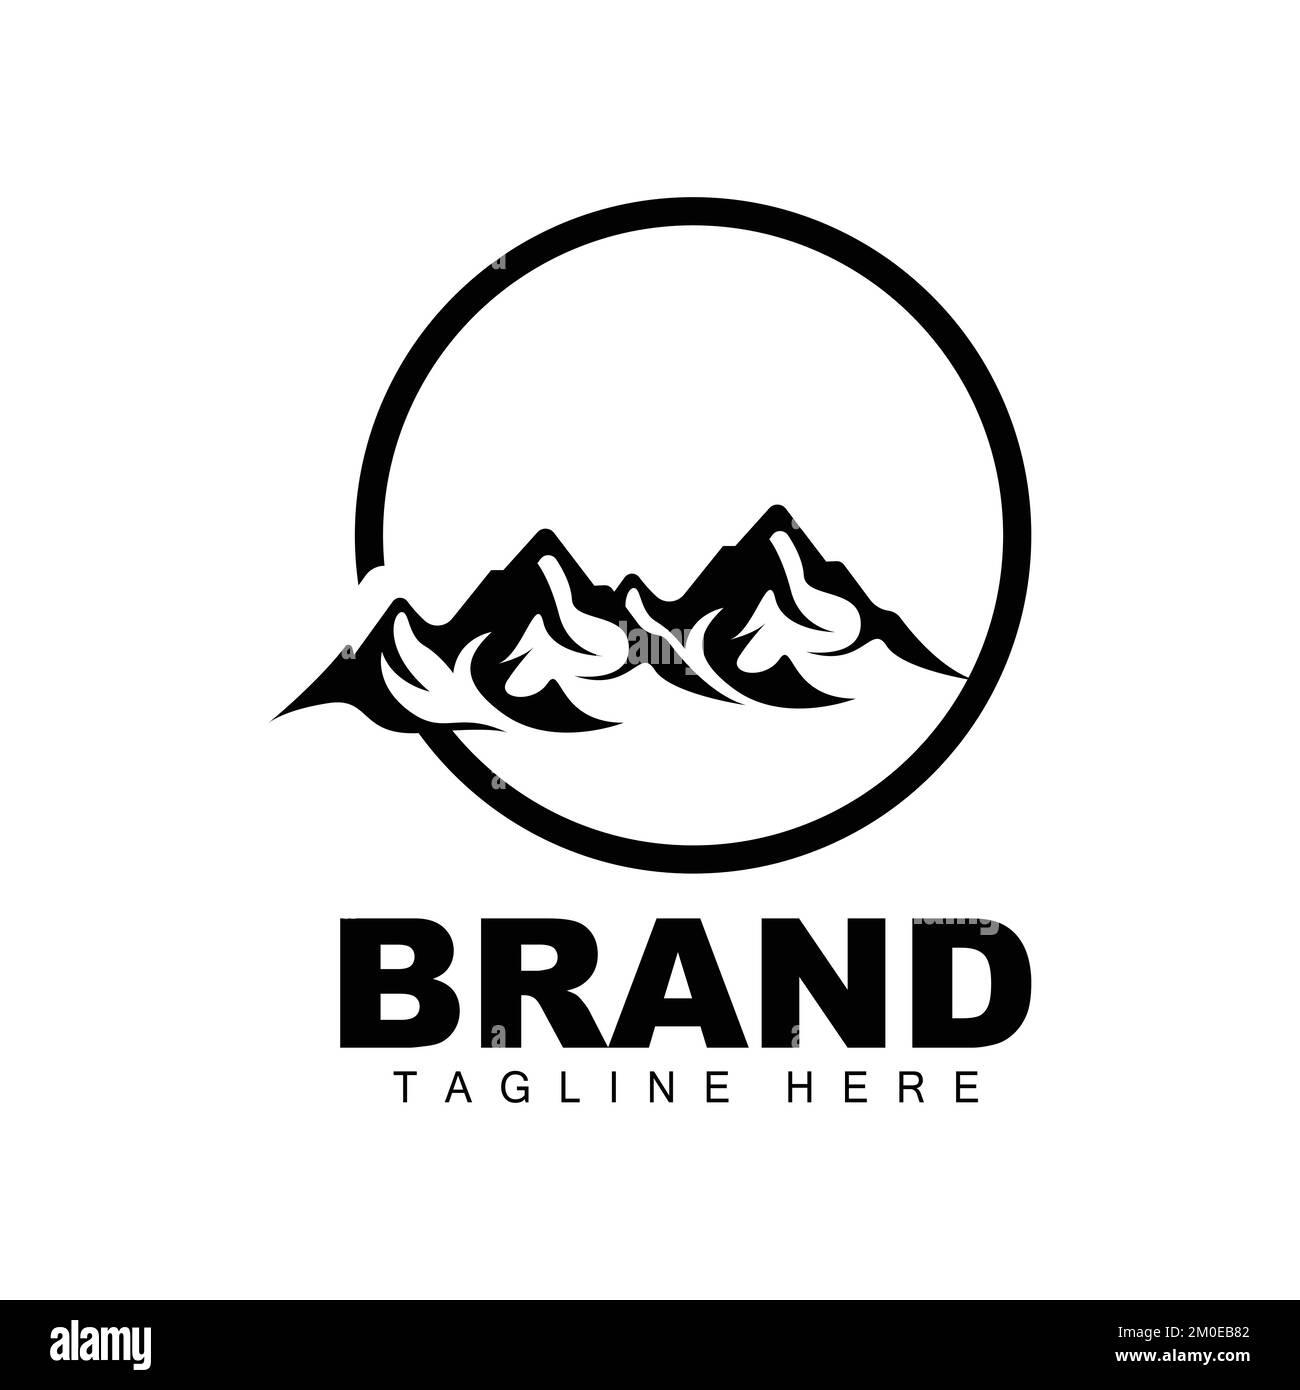 Mountain Logo, Vector Mountain Climbing, Adventure, Design For Climbing, Climbing Equipment, And Brand With Mountain Logo Stock Vector